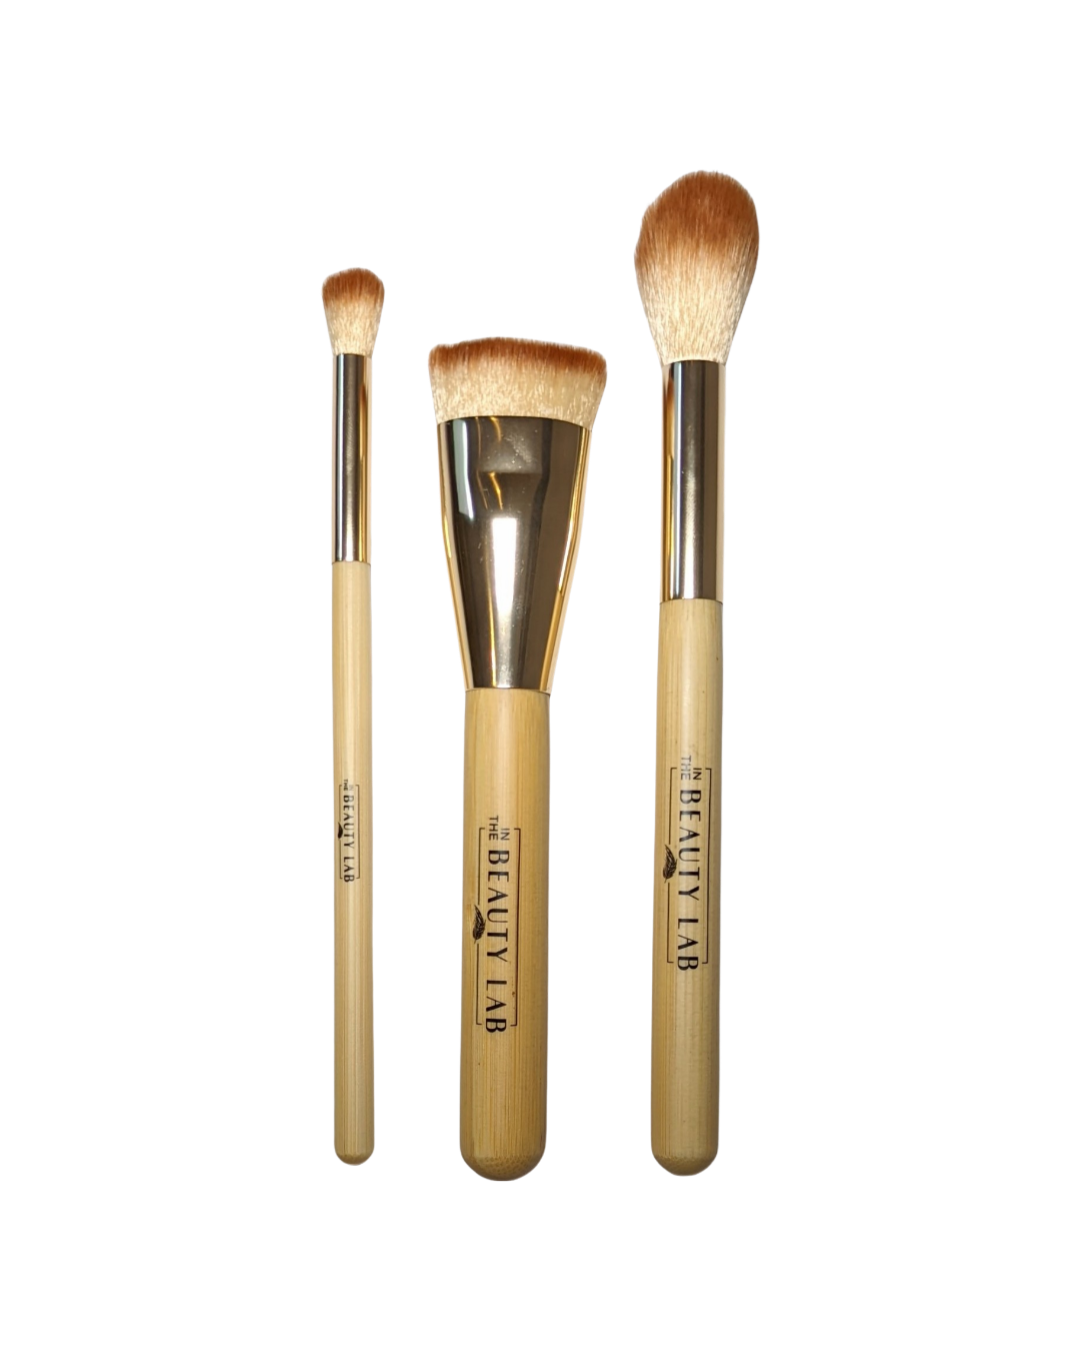 Vegan Makeup Brush Sets